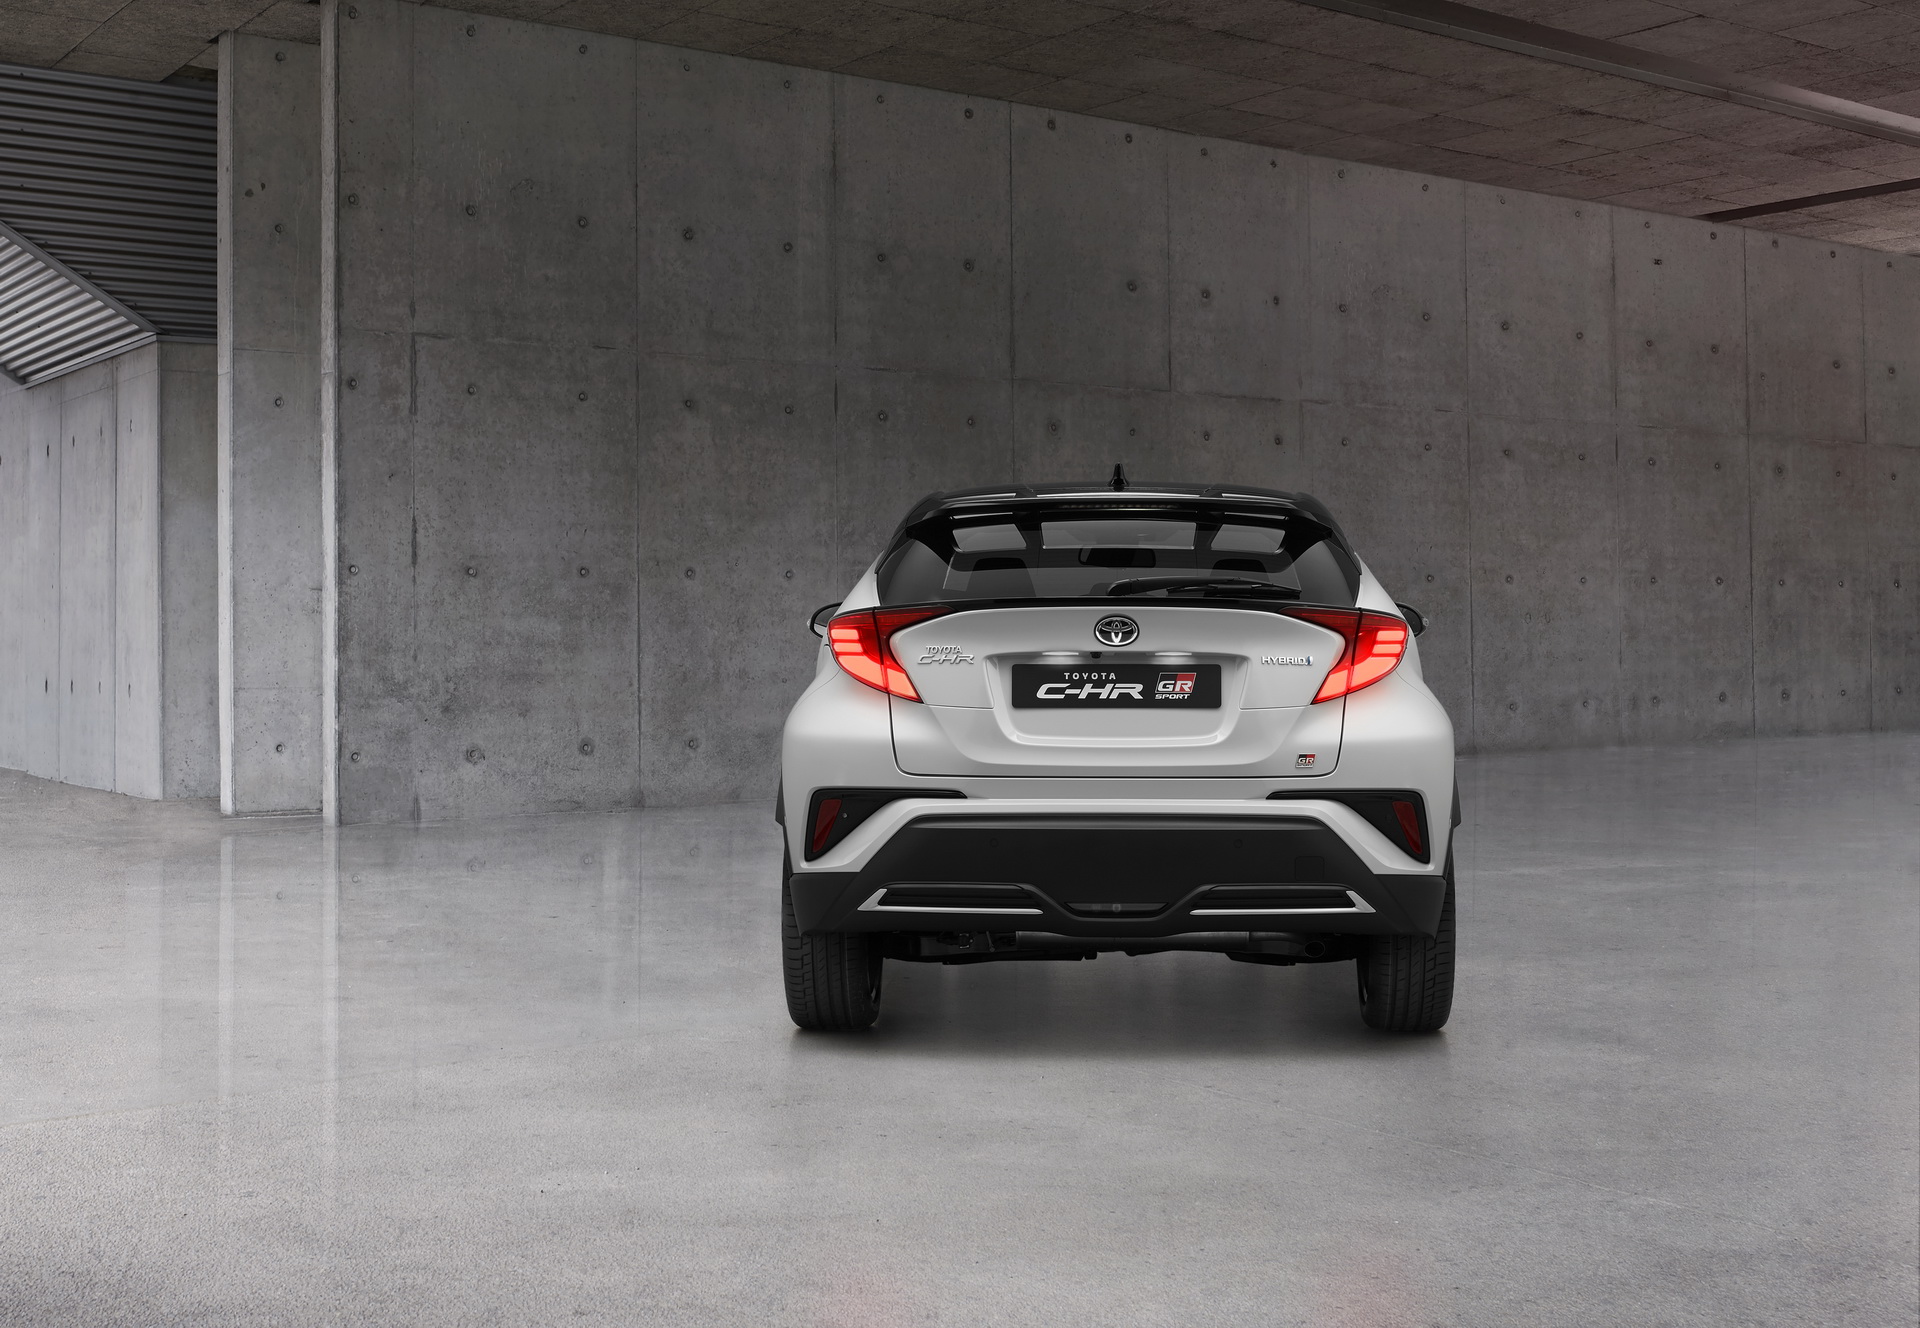 2021 Toyota C-HR GR Sport resim galerisi (10.11.2020)